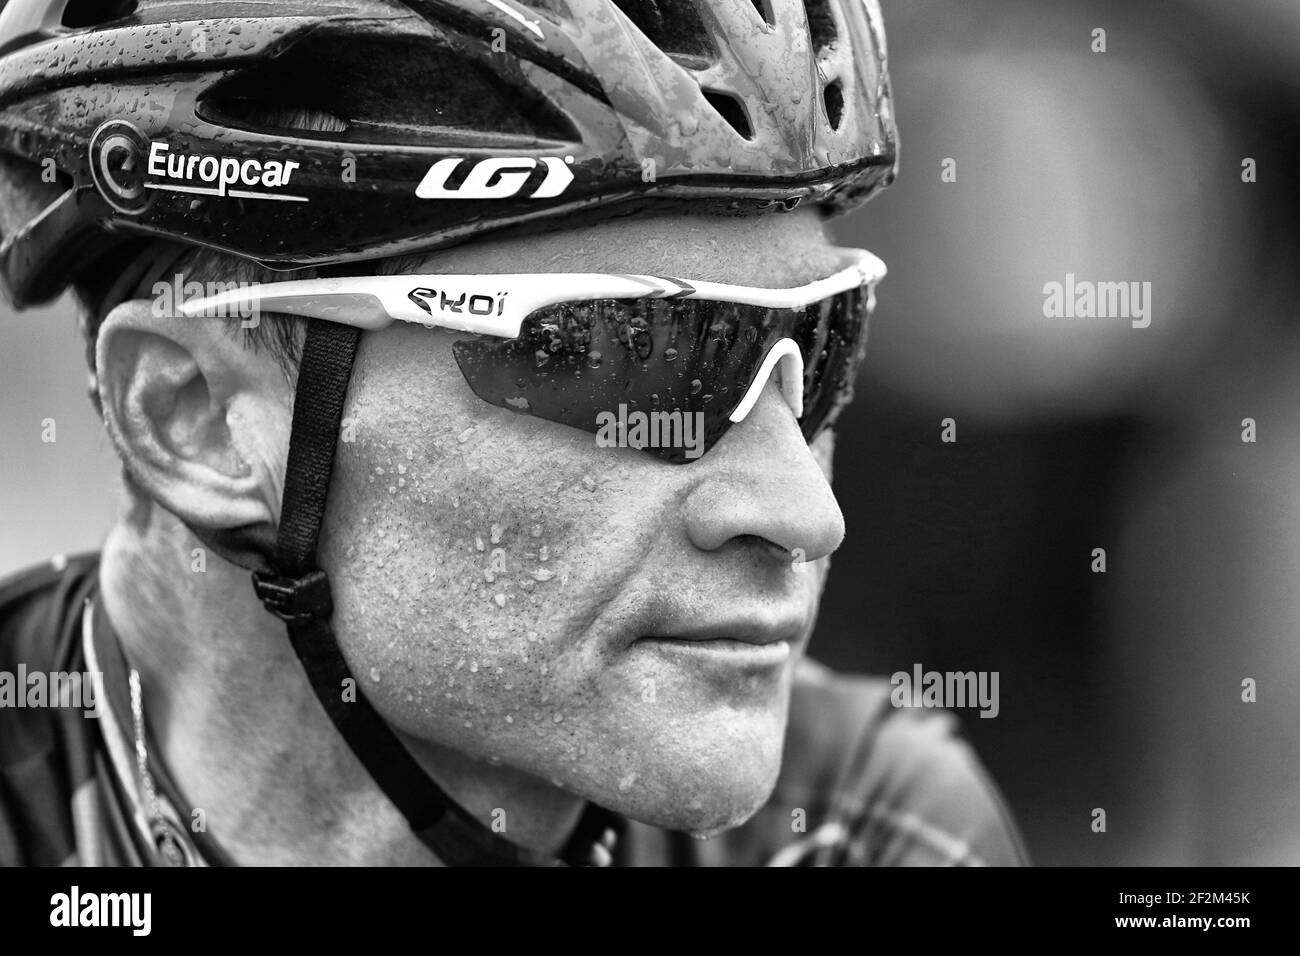 Thomas Voeckler de France à cheval pour Team Europcar regarde en franchissant la ligne d'arrivée pendant le Tour de France, UCI World Tour 2014, Stage 19, Maubourguet pays du Val d'Adour - Bergerac (208,5 km), le 25 juillet 2014 - photo Manuel Blondeau / AOP Press / DPPI Banque D'Images